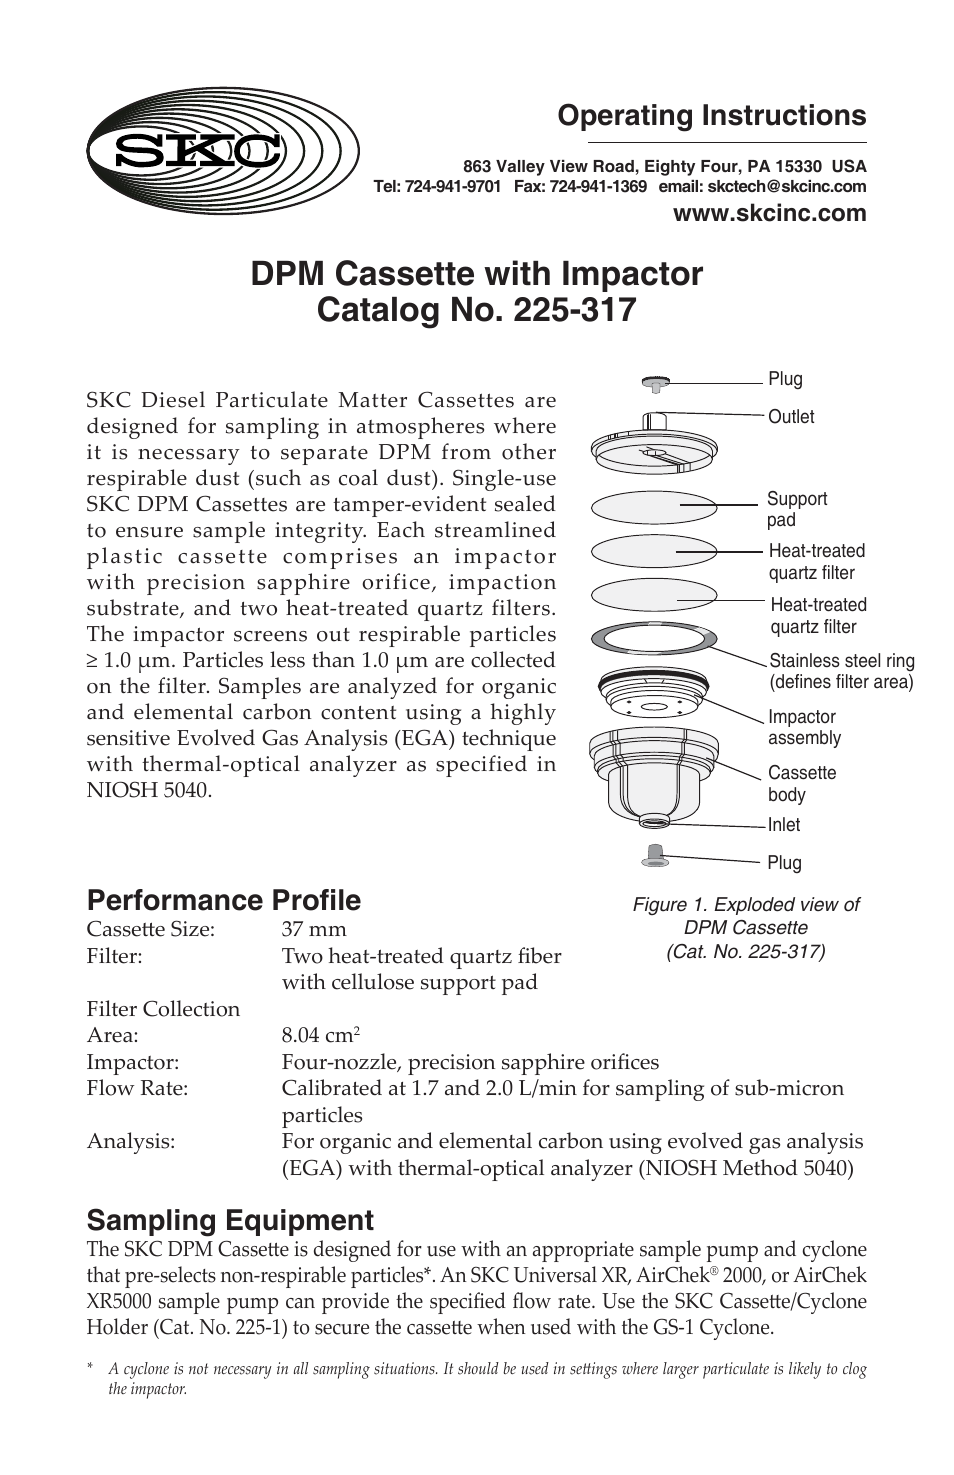 225-317 SKC Diesel Particulate Matter (DPM) FIlter Cassette